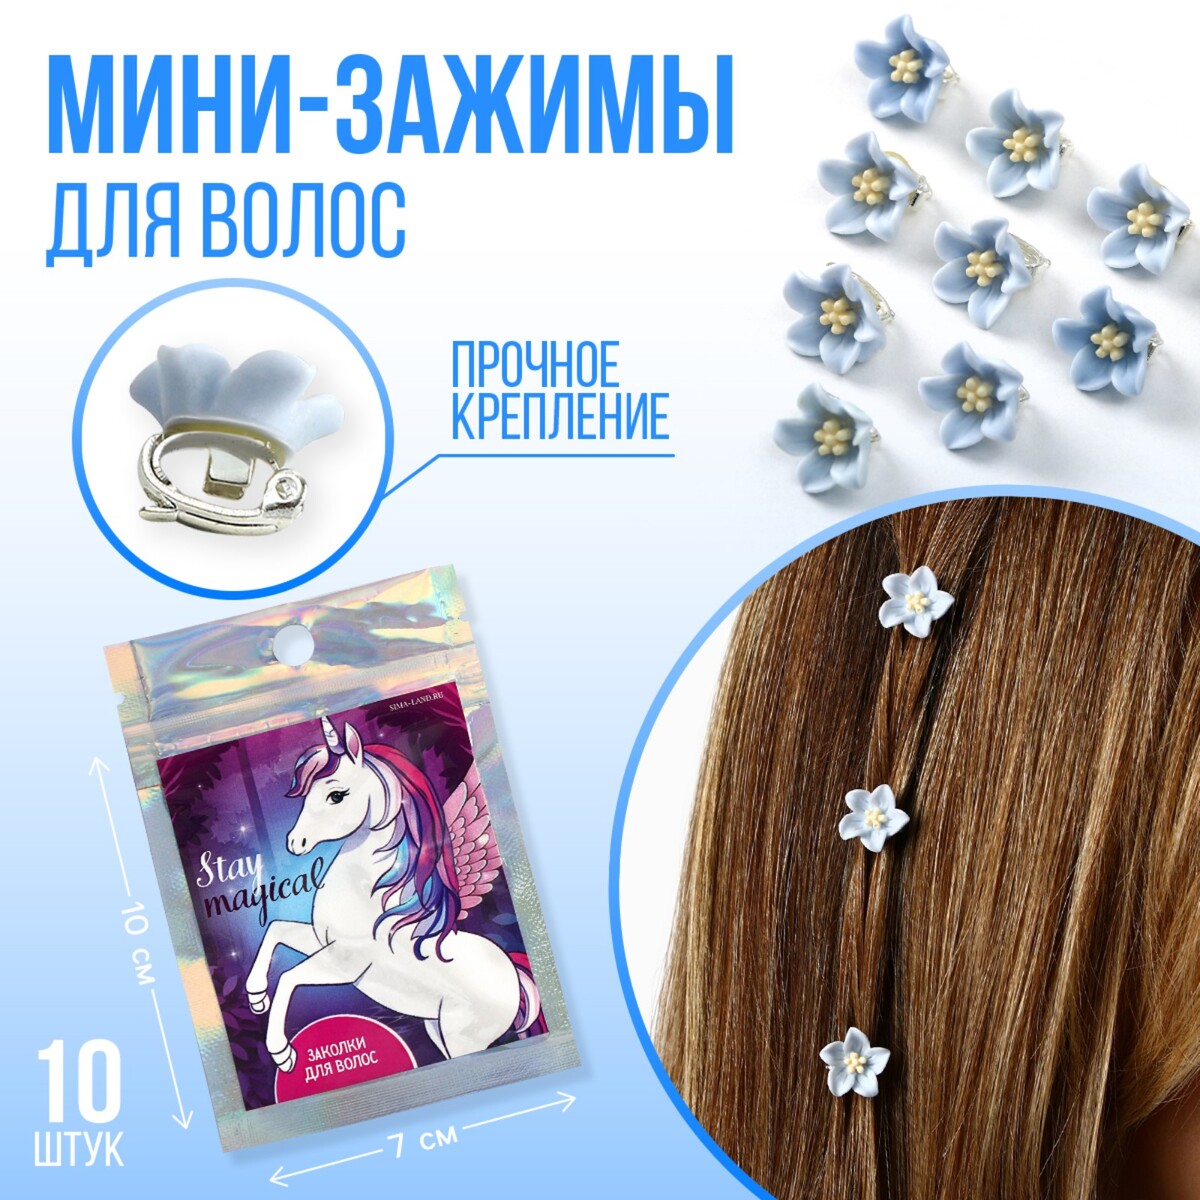 Набор мини-зажимов для украшения волос stay magical, 10 шт., 1.3 х 1.3 х 1.5 см аксессуары для волос c бижутерией